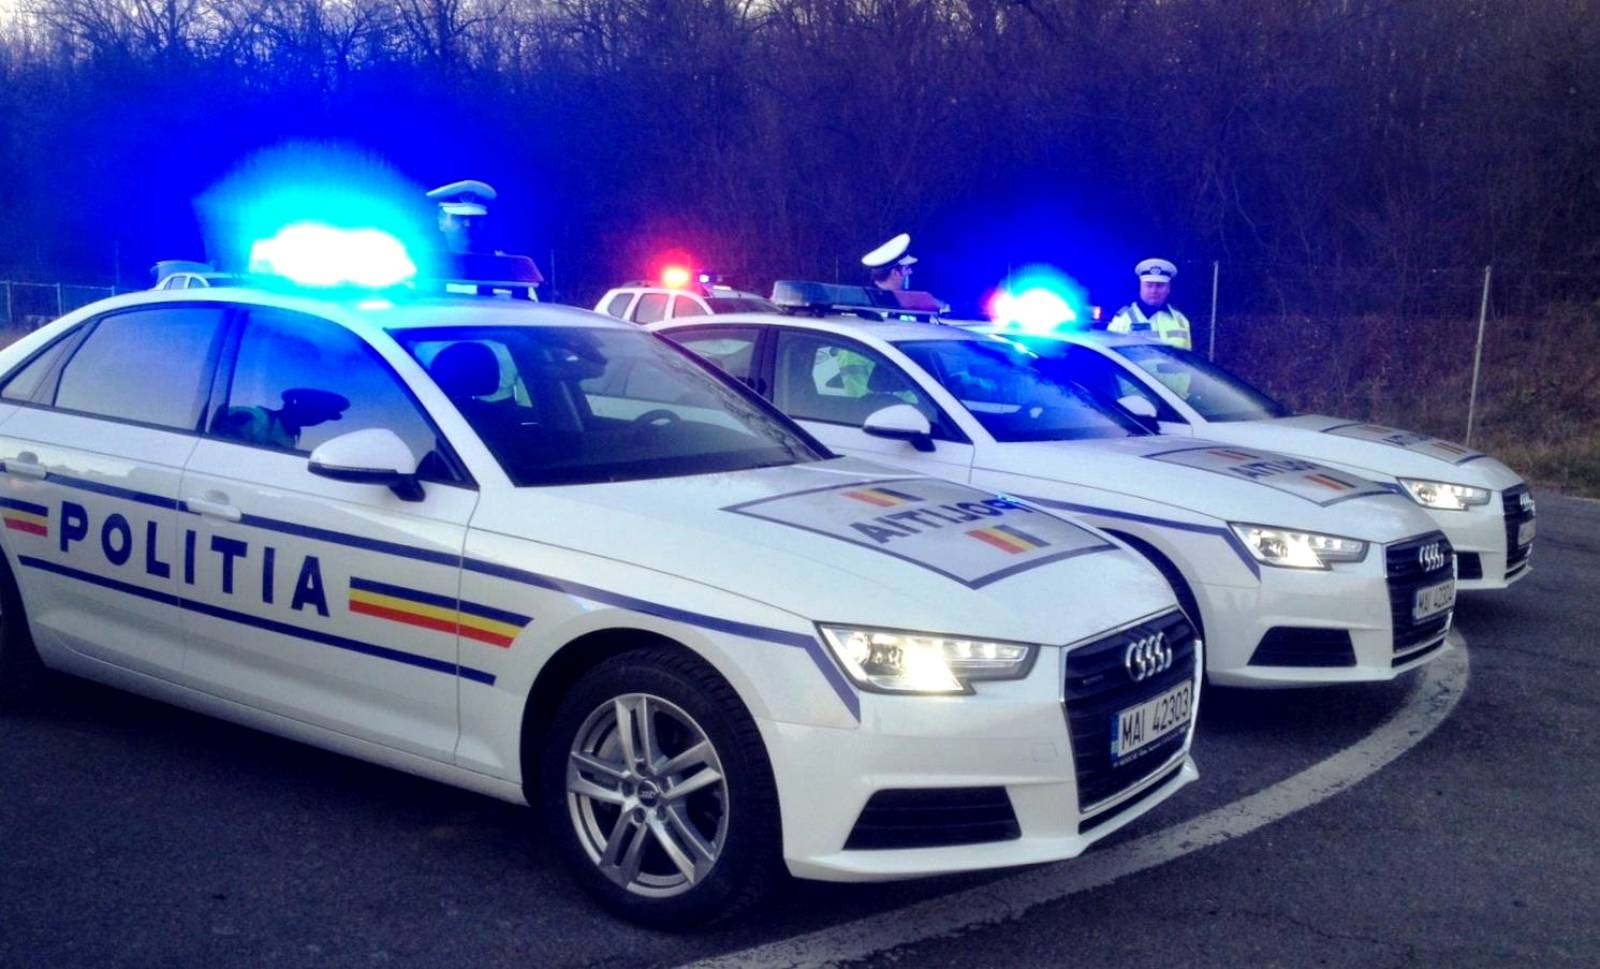 Ausnahmezustand der rumänischen Polizei Rovinia